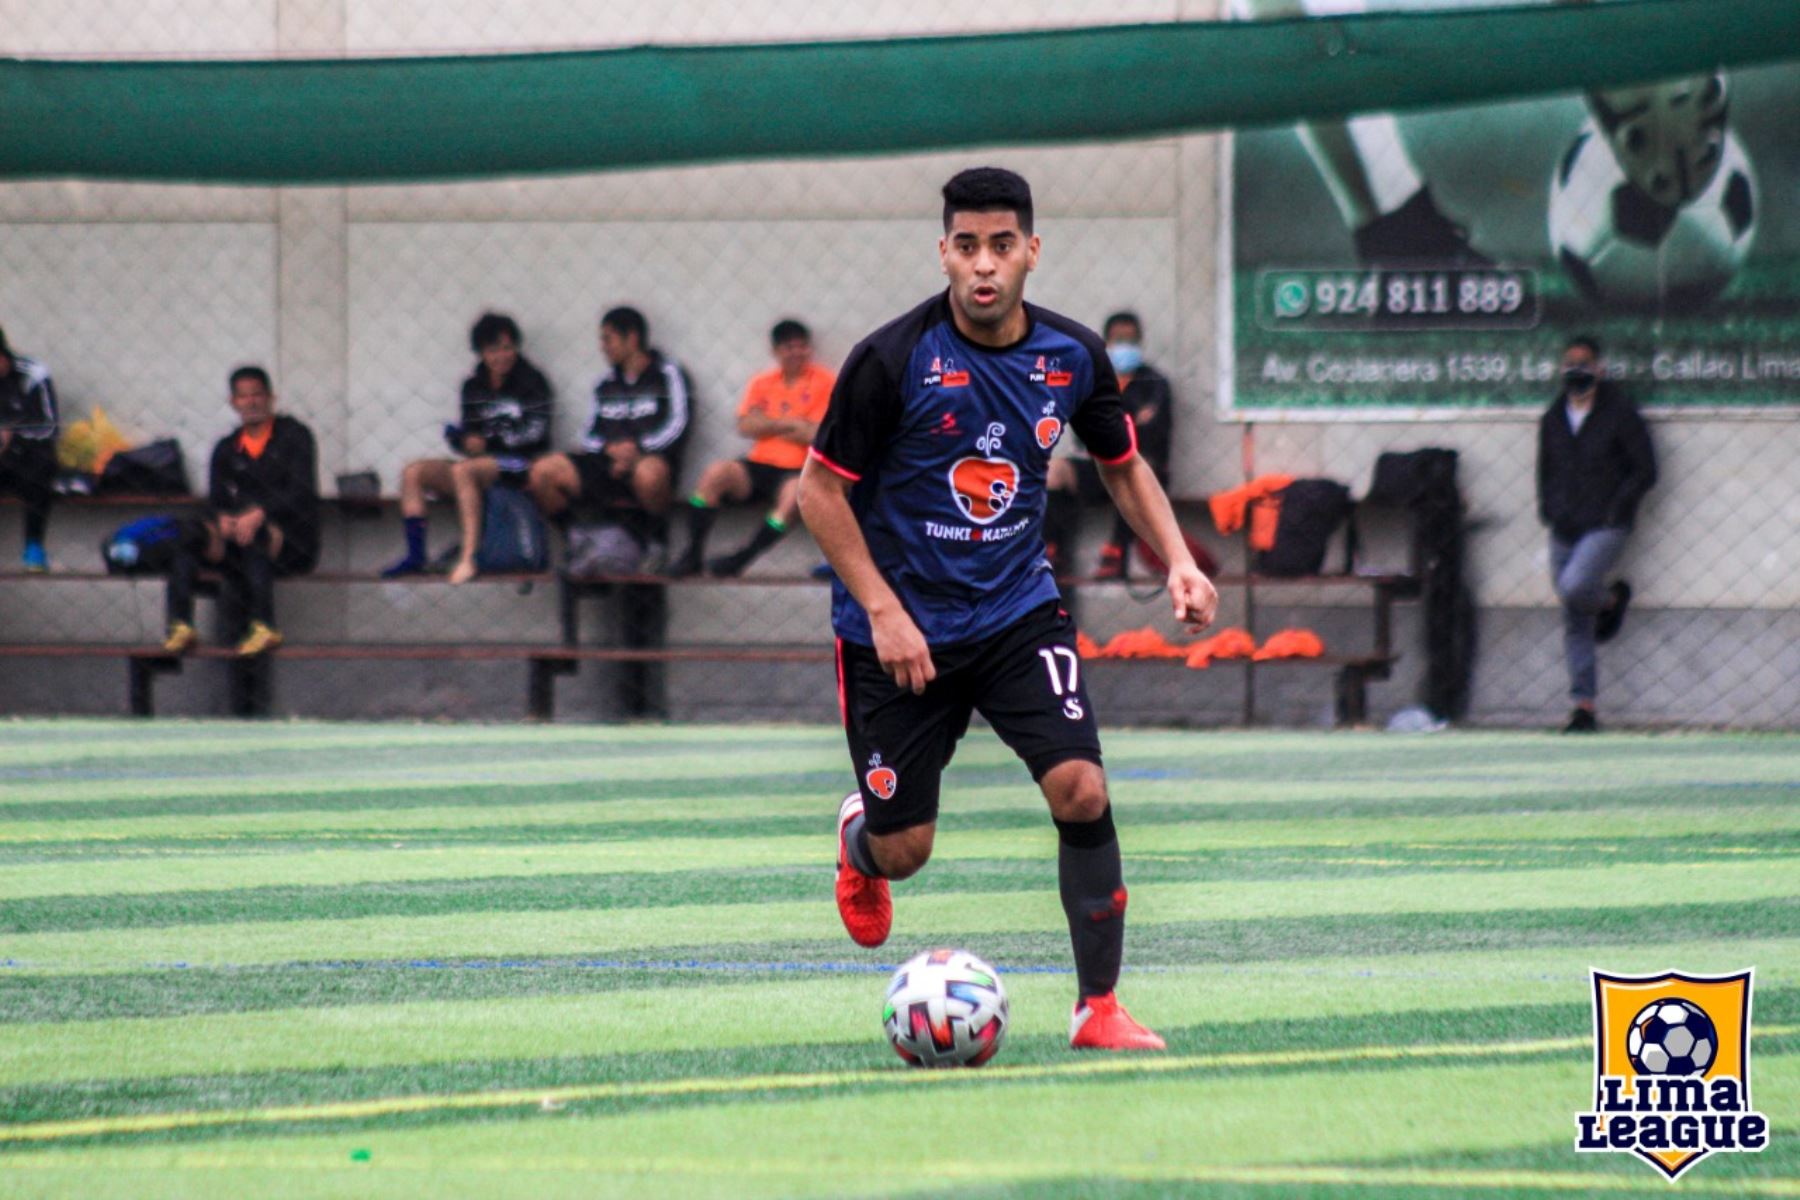 Lima League impulsa la práctica del fútbol en jóvenes y adultos